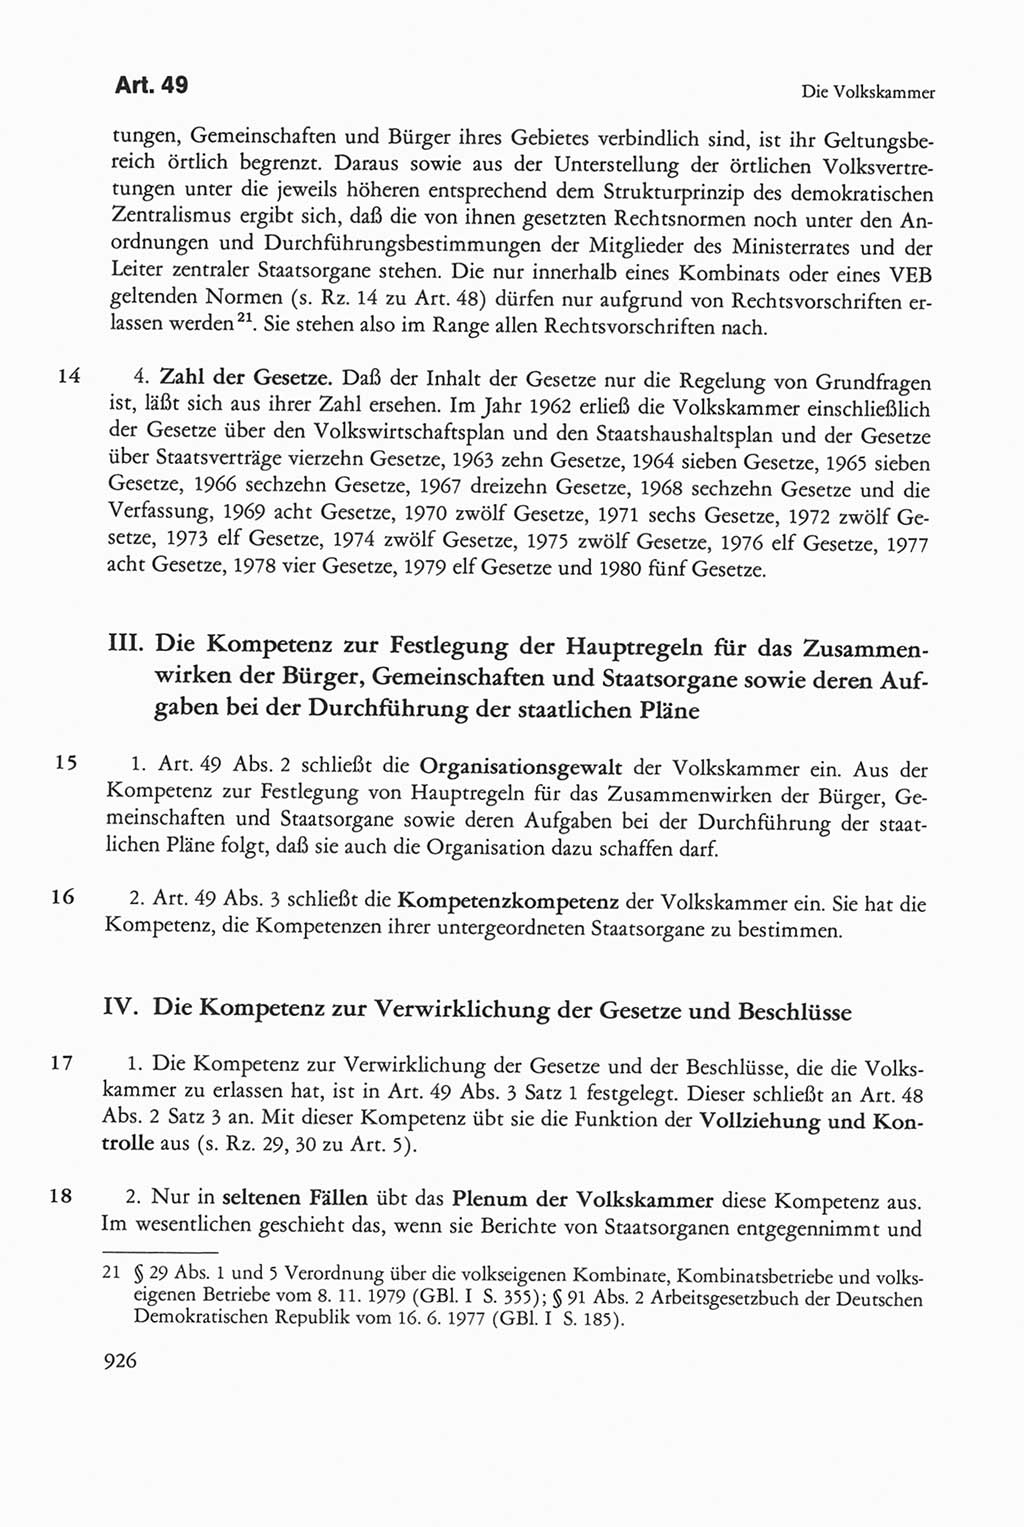 Die sozialistische Verfassung der Deutschen Demokratischen Republik (DDR), Kommentar 1982, Seite 926 (Soz. Verf. DDR Komm. 1982, S. 926)